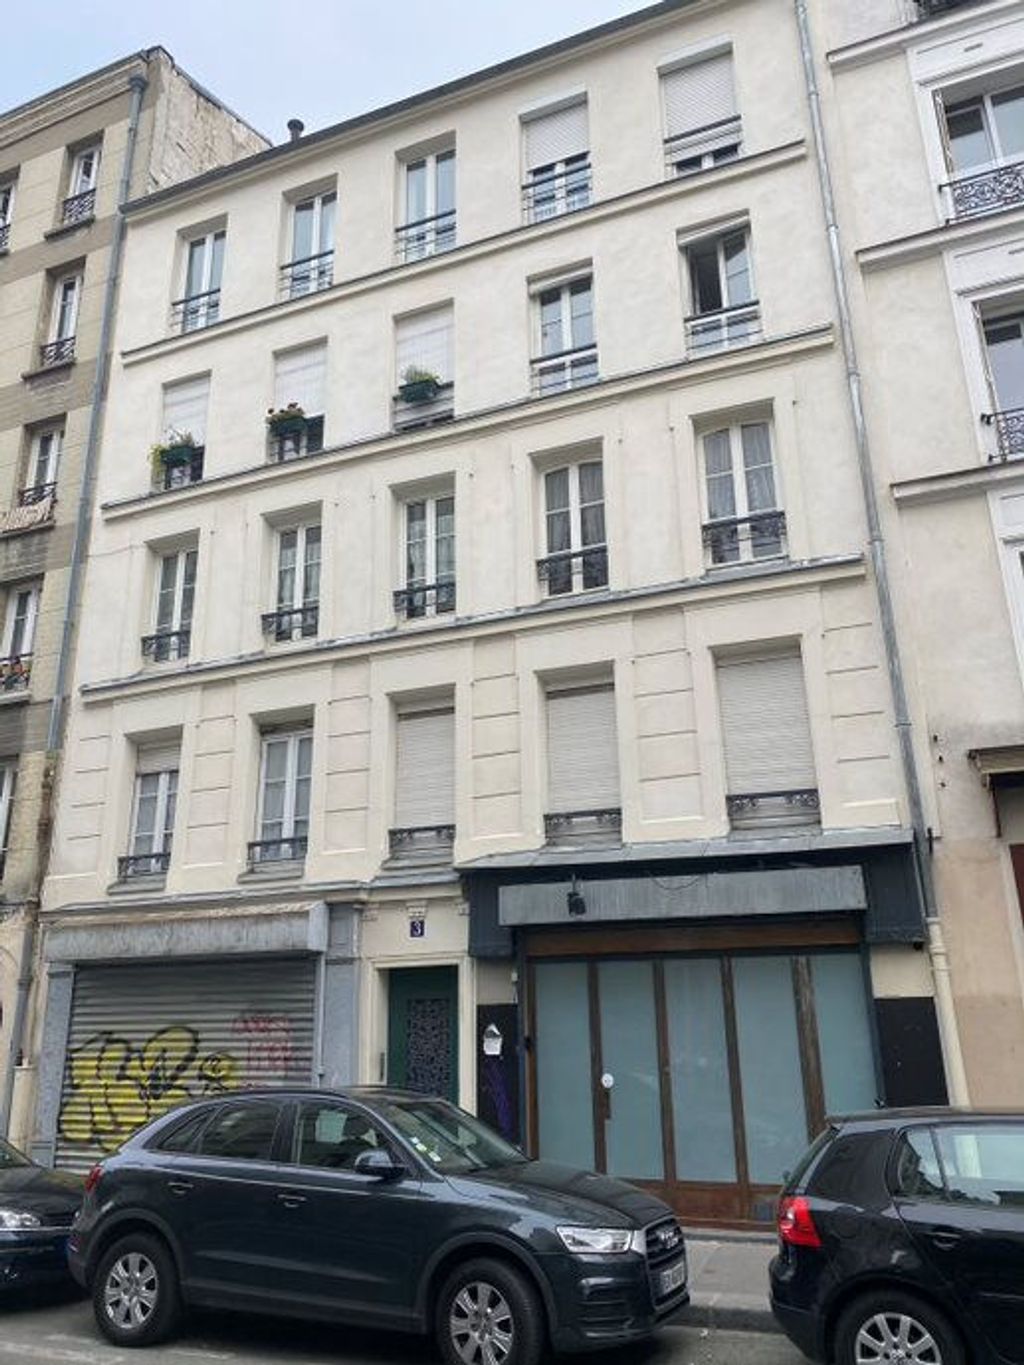 Achat studio à vendre 11 m² - Paris 20ème arrondissement